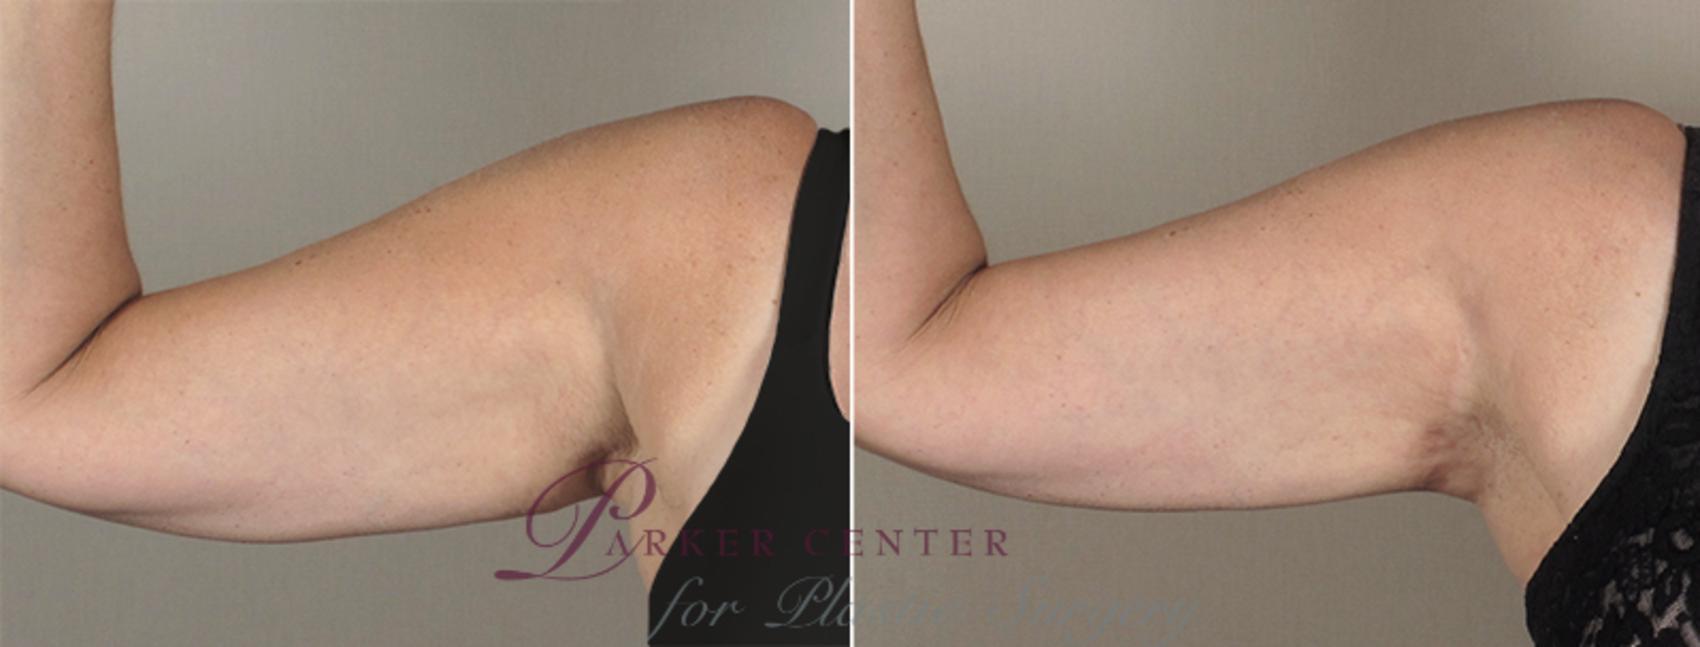 Upper Arm Rejuvenation Case 829 Before & After View #1 | Paramus, NJ | Parker Center for Plastic Surgery